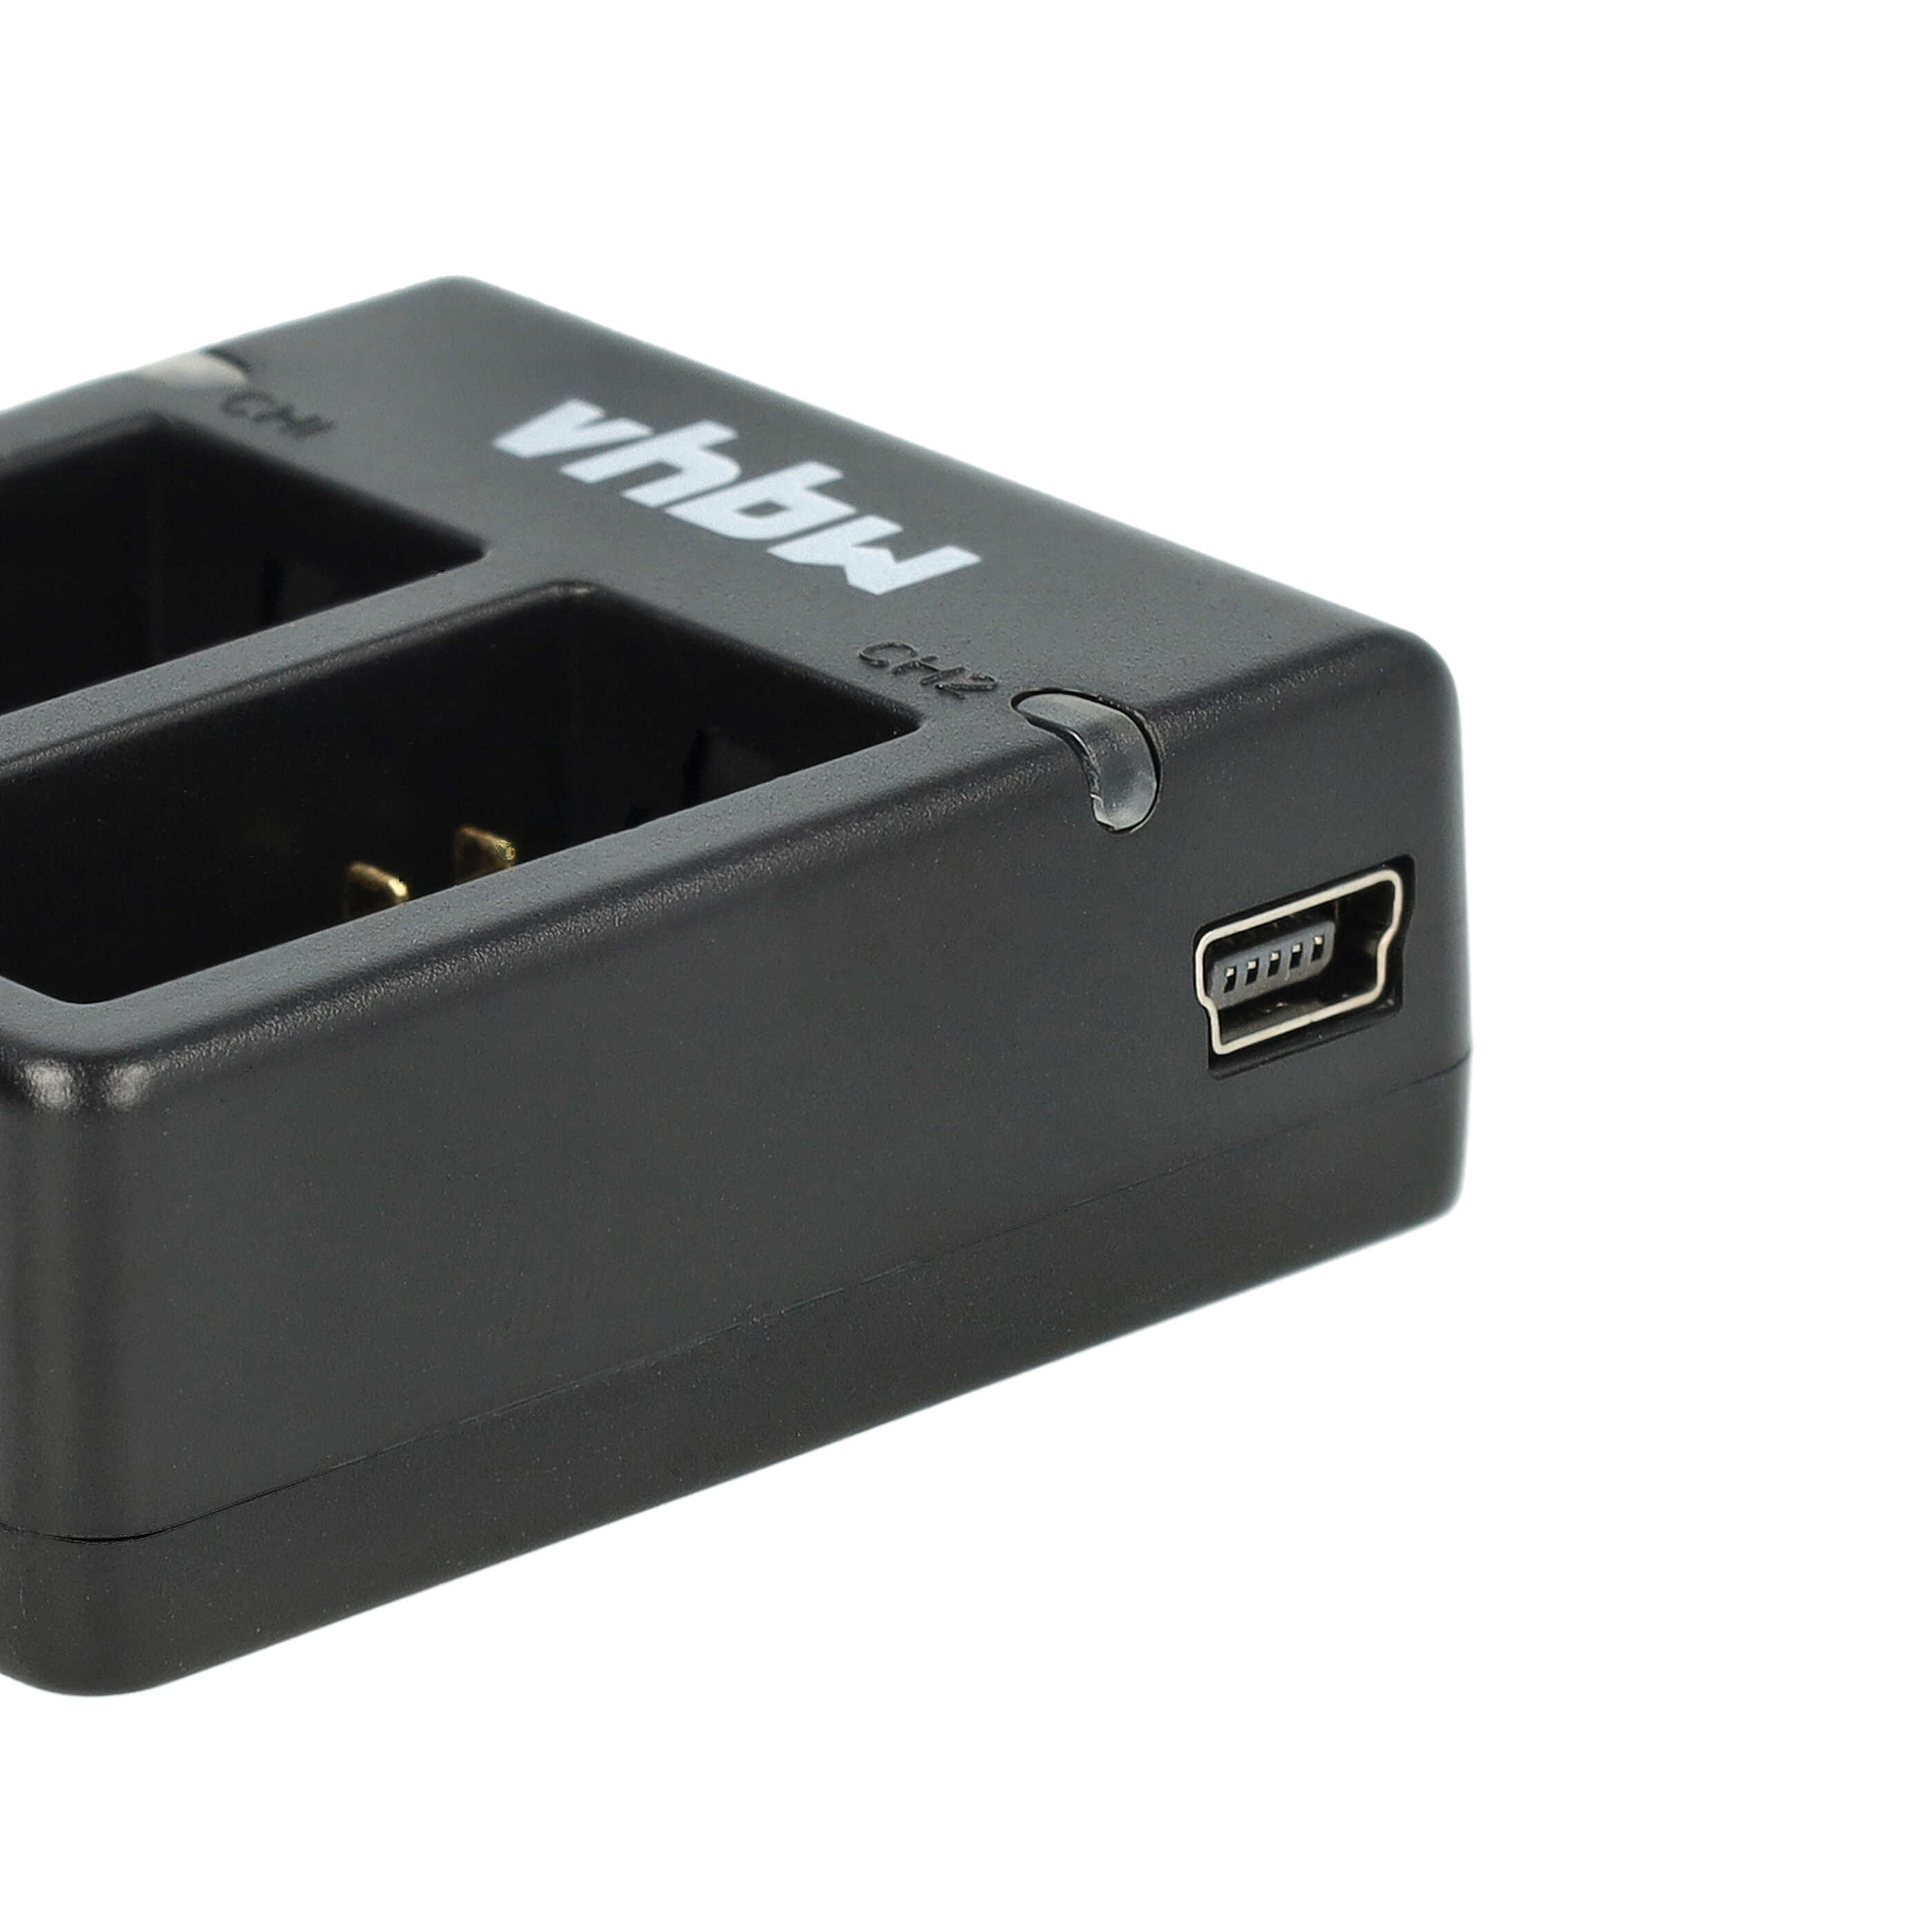 Akku Ladegerät passend für Hero 3 III White Edition Kamera u.a. - 0,75 A, 4,2 V